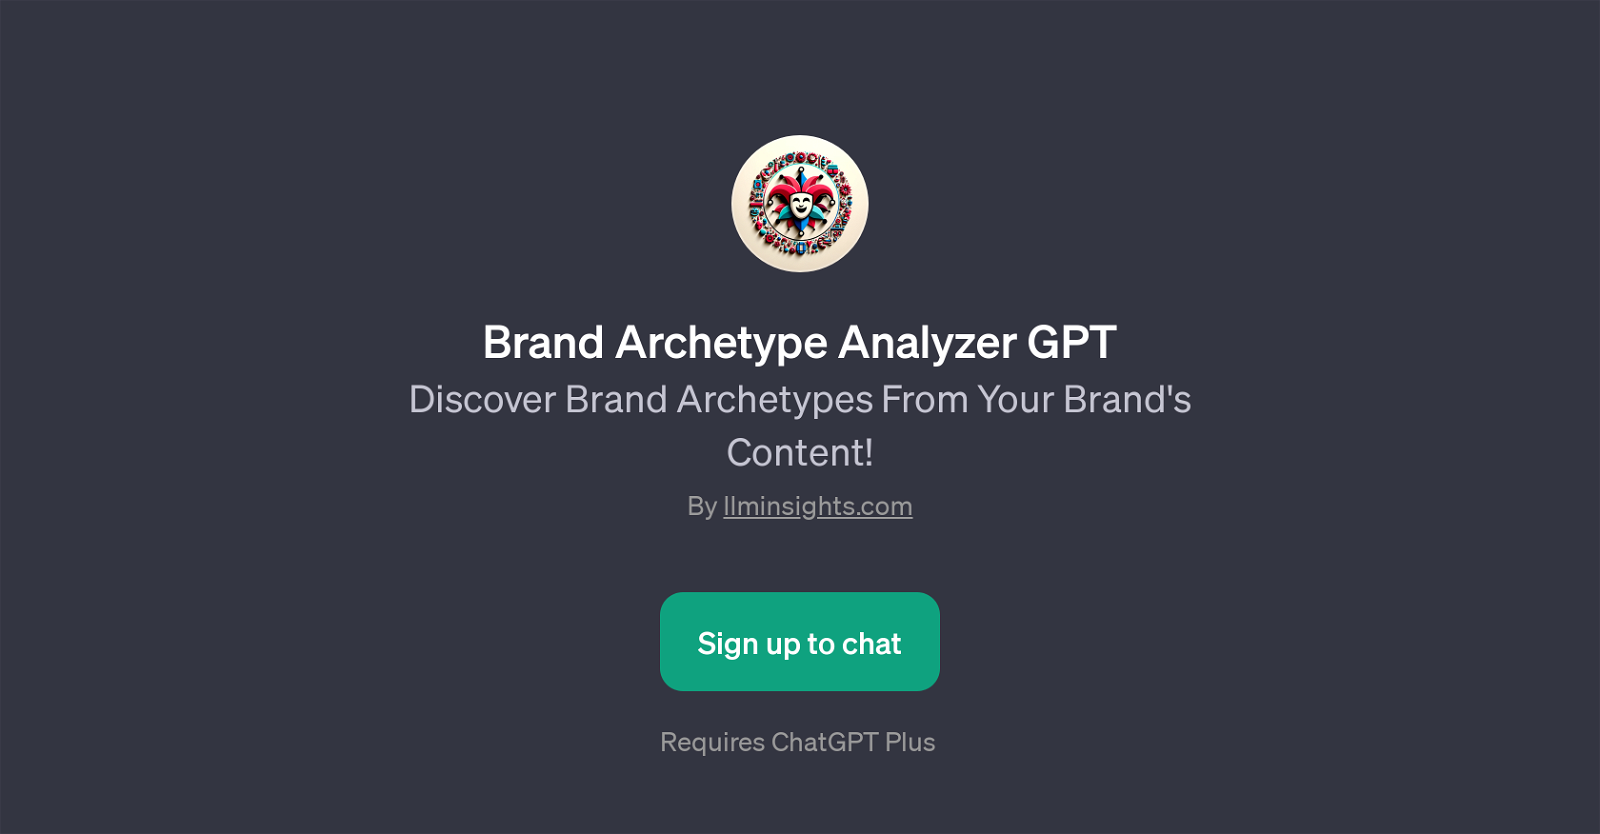 Brand Archetype Analyzer GPT website